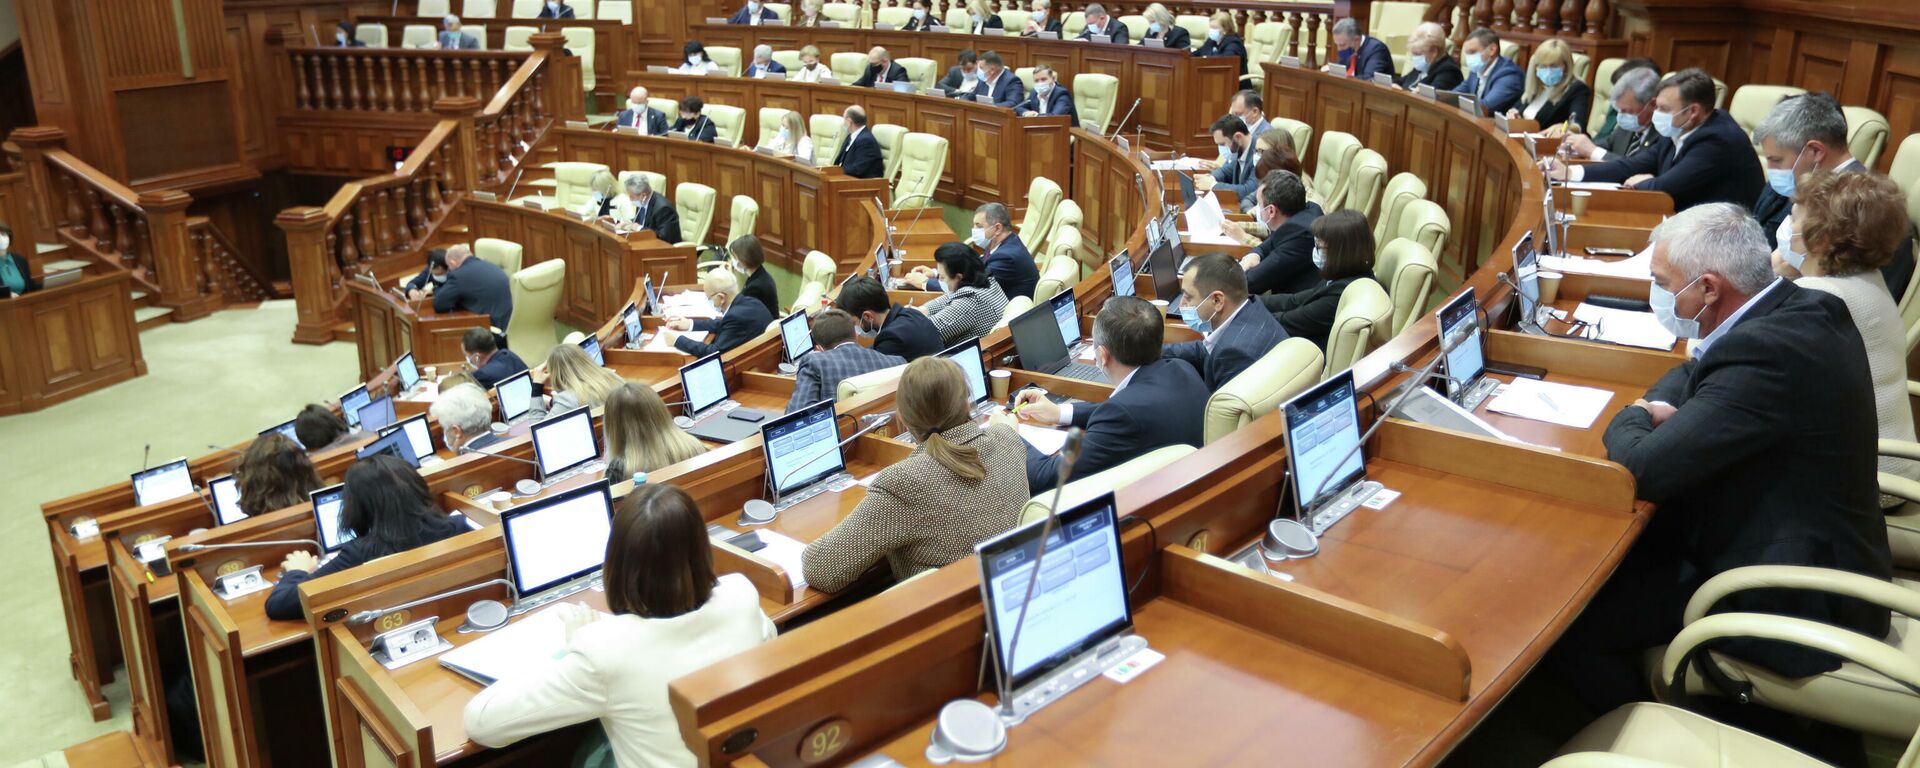 Парламент Молдовы обсуждает бюджет страны на 2022 год - Sputnik Молдова, 1920, 06.12.2021